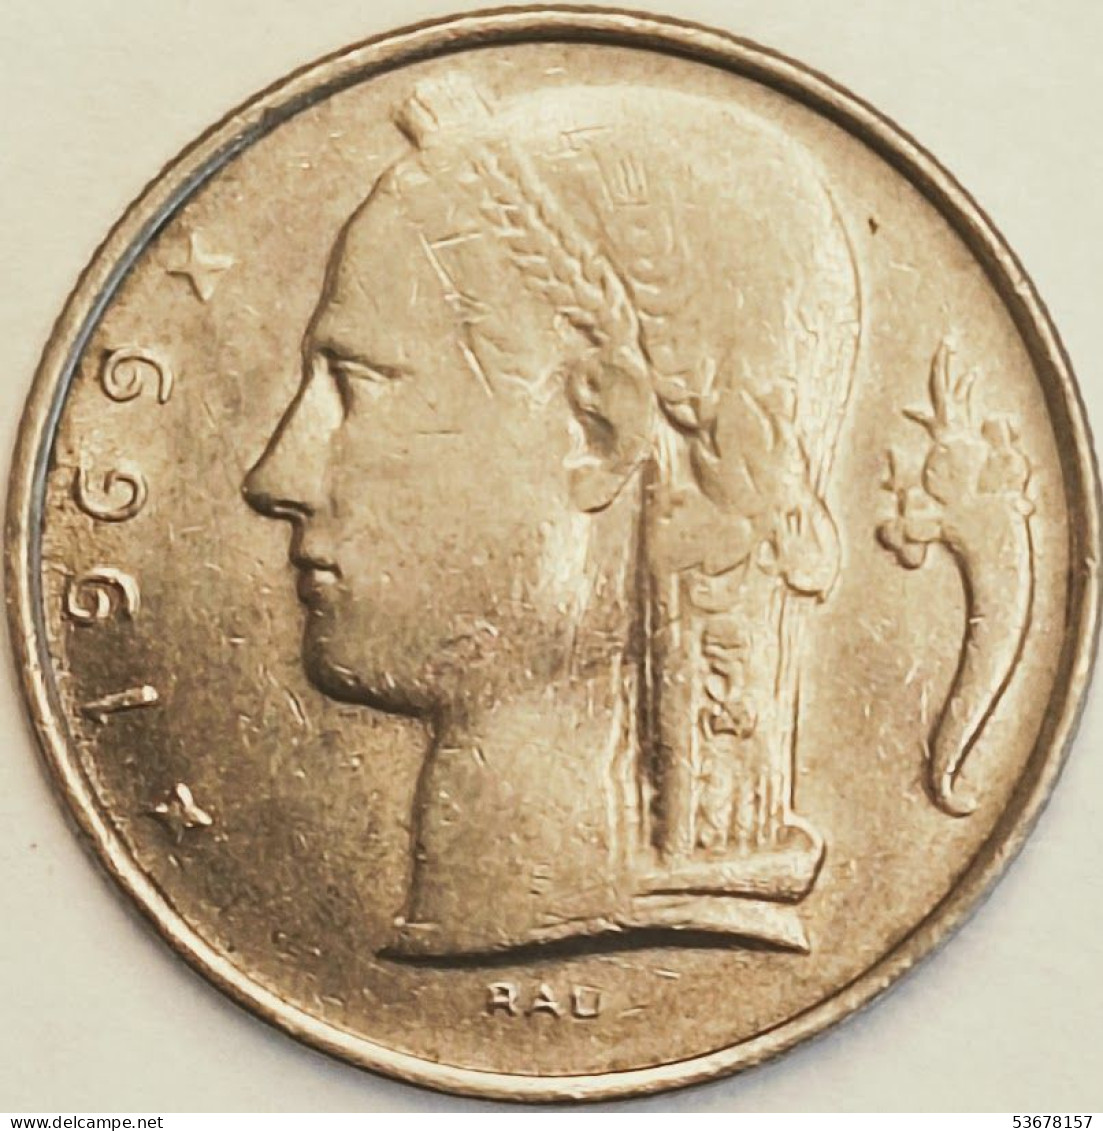 Belgium - 5 Francs 1969, KM# 135.1 (#3188) - 5 Francs